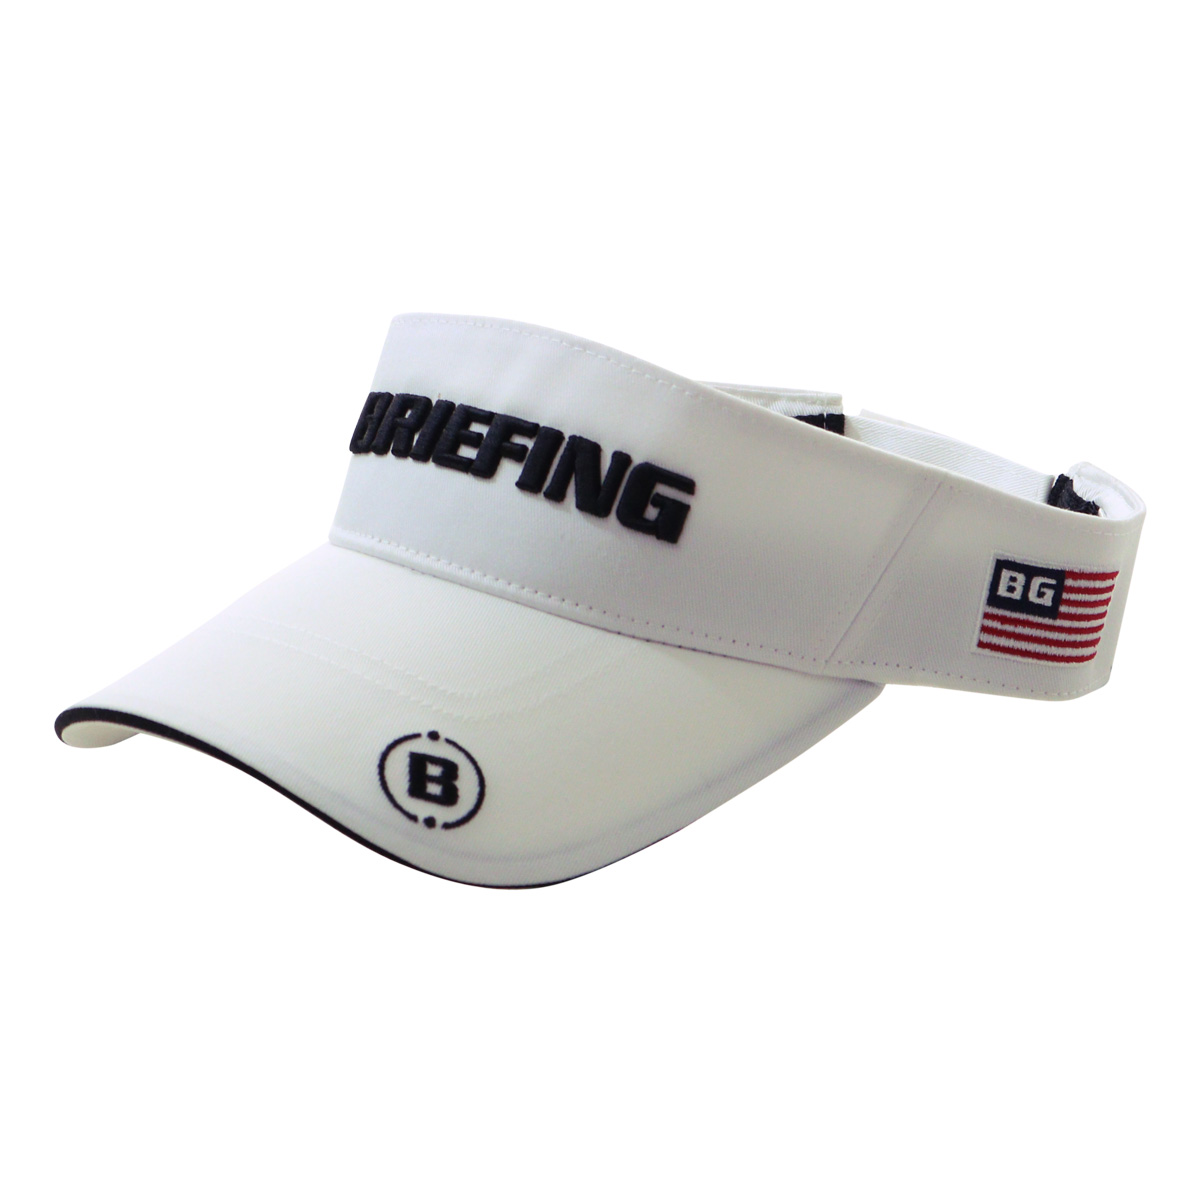 ブリーフィング ゴルフ サンバイザー 帽子 メンズ BRG241M91 BRIEFING スポーツ